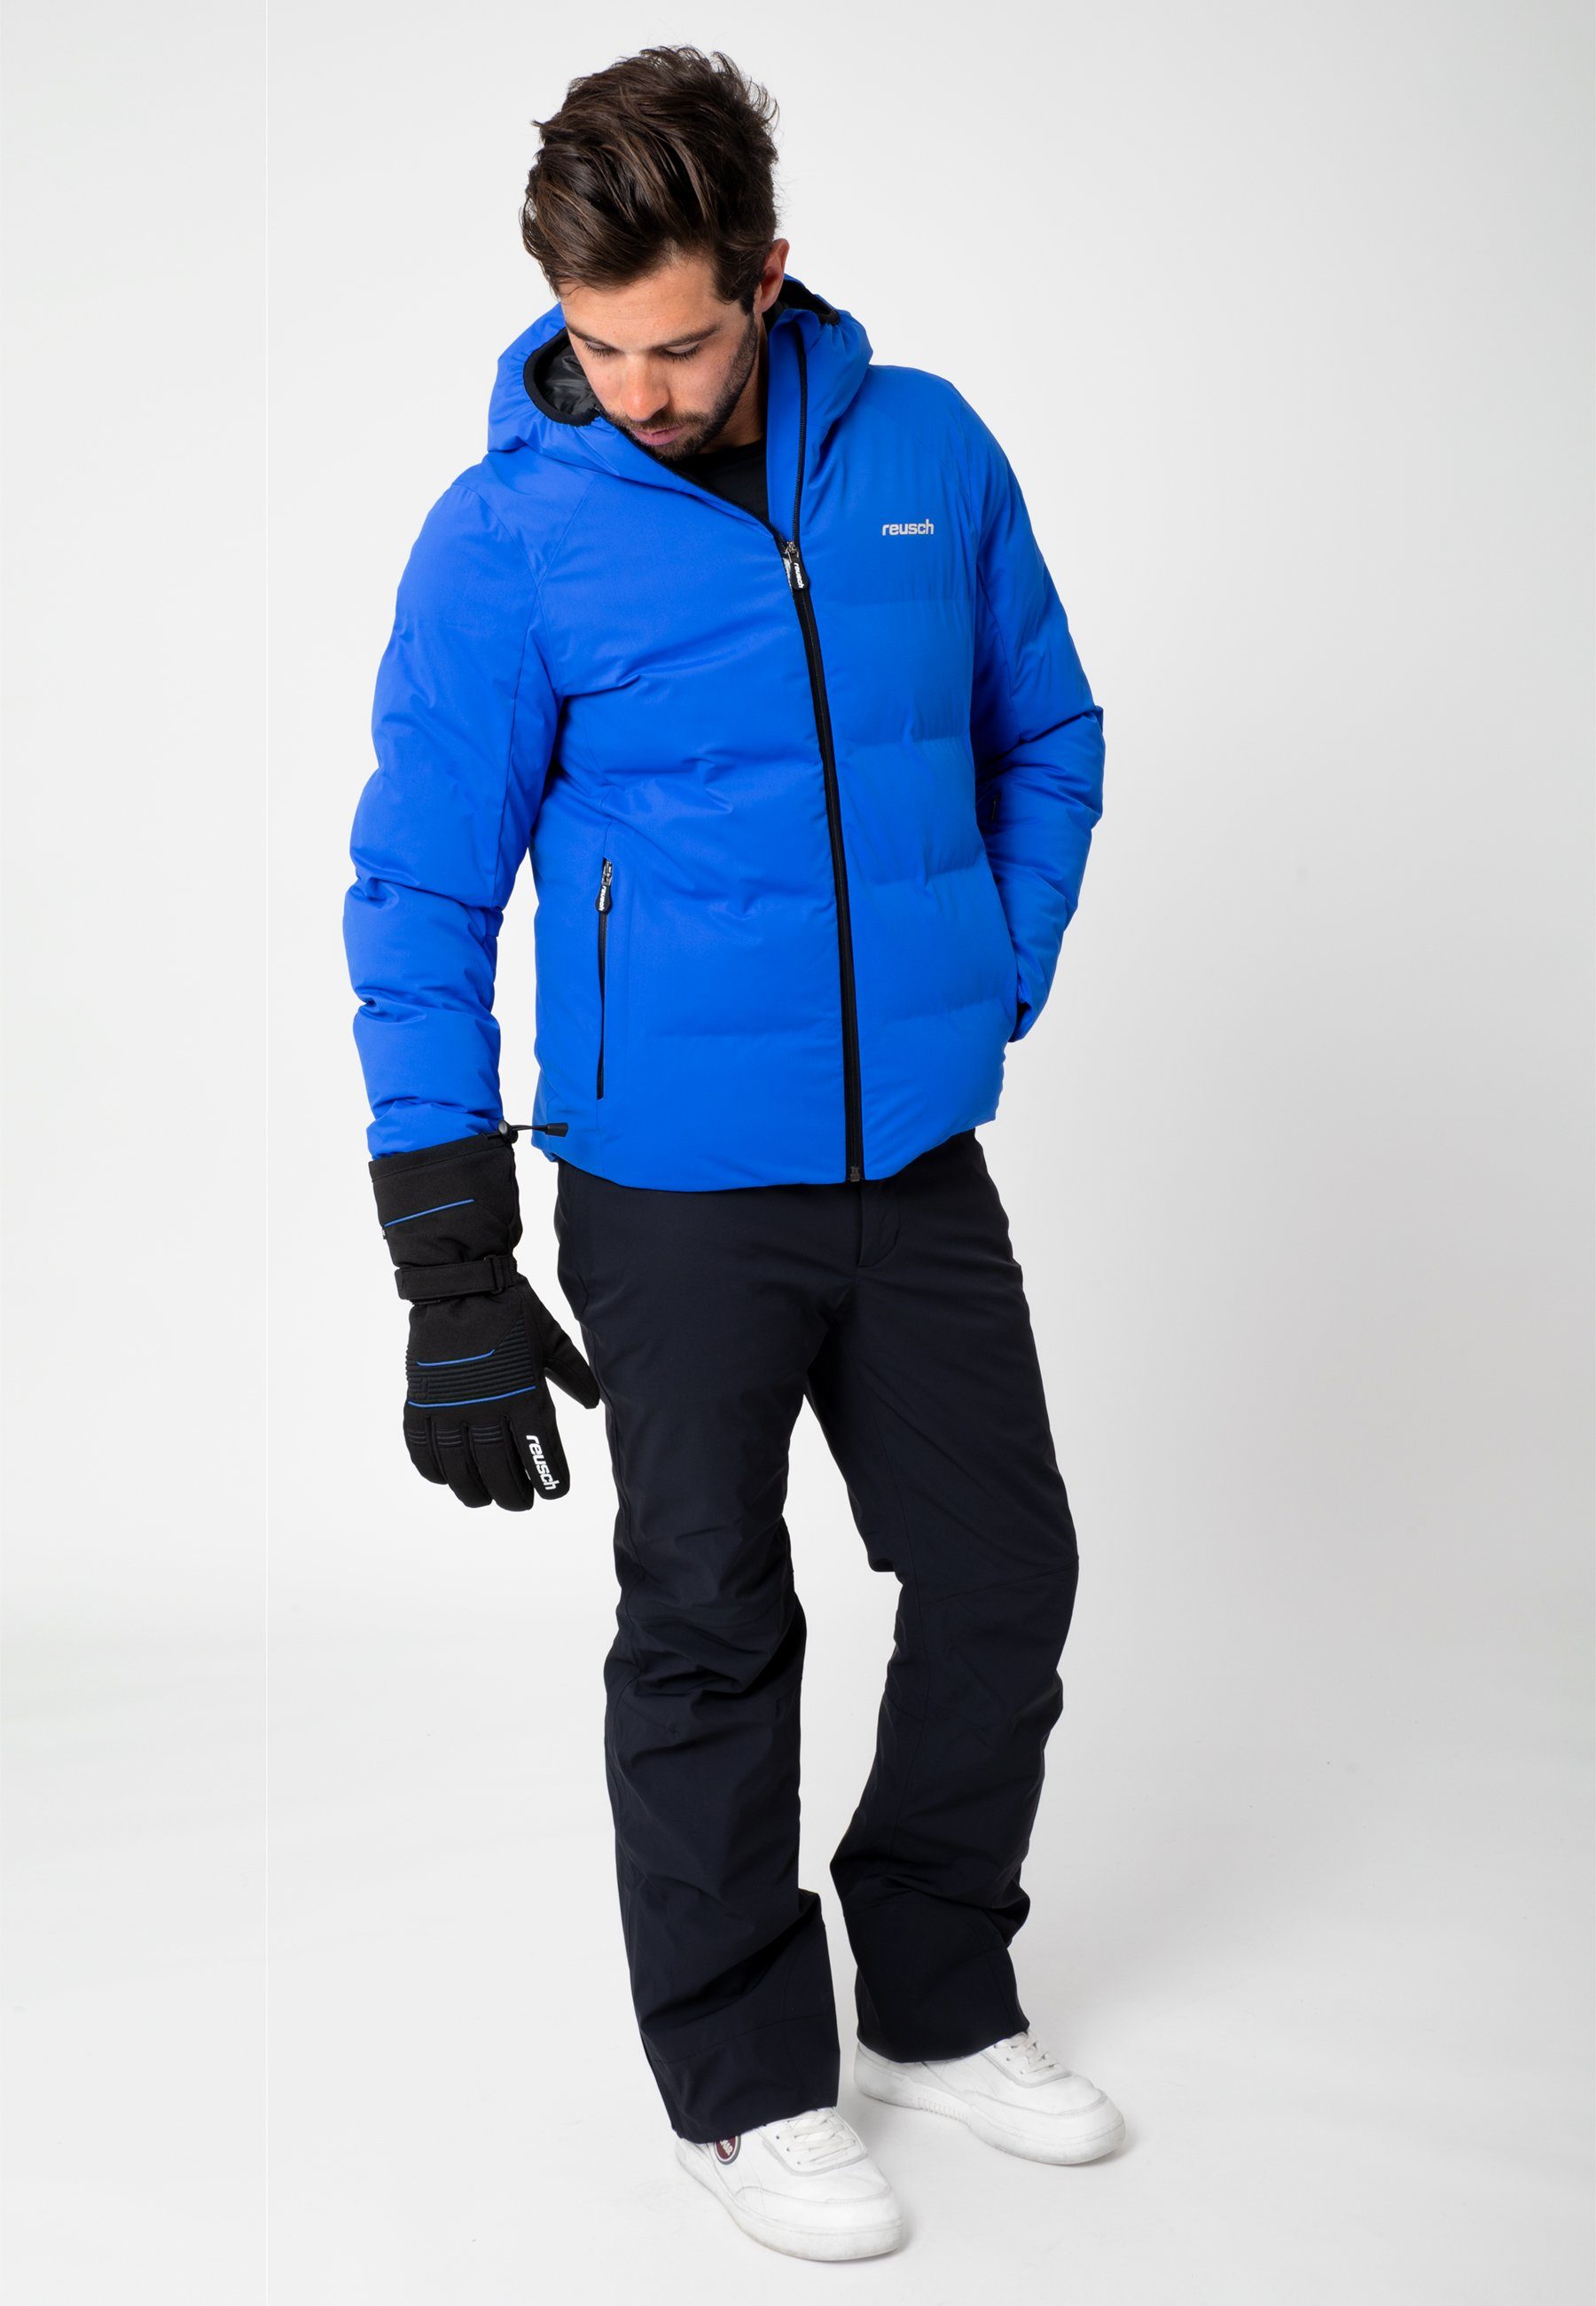 Skihandschuhe in XT sportlichem blau-schwarz Reusch Crosby Design R-TEX®